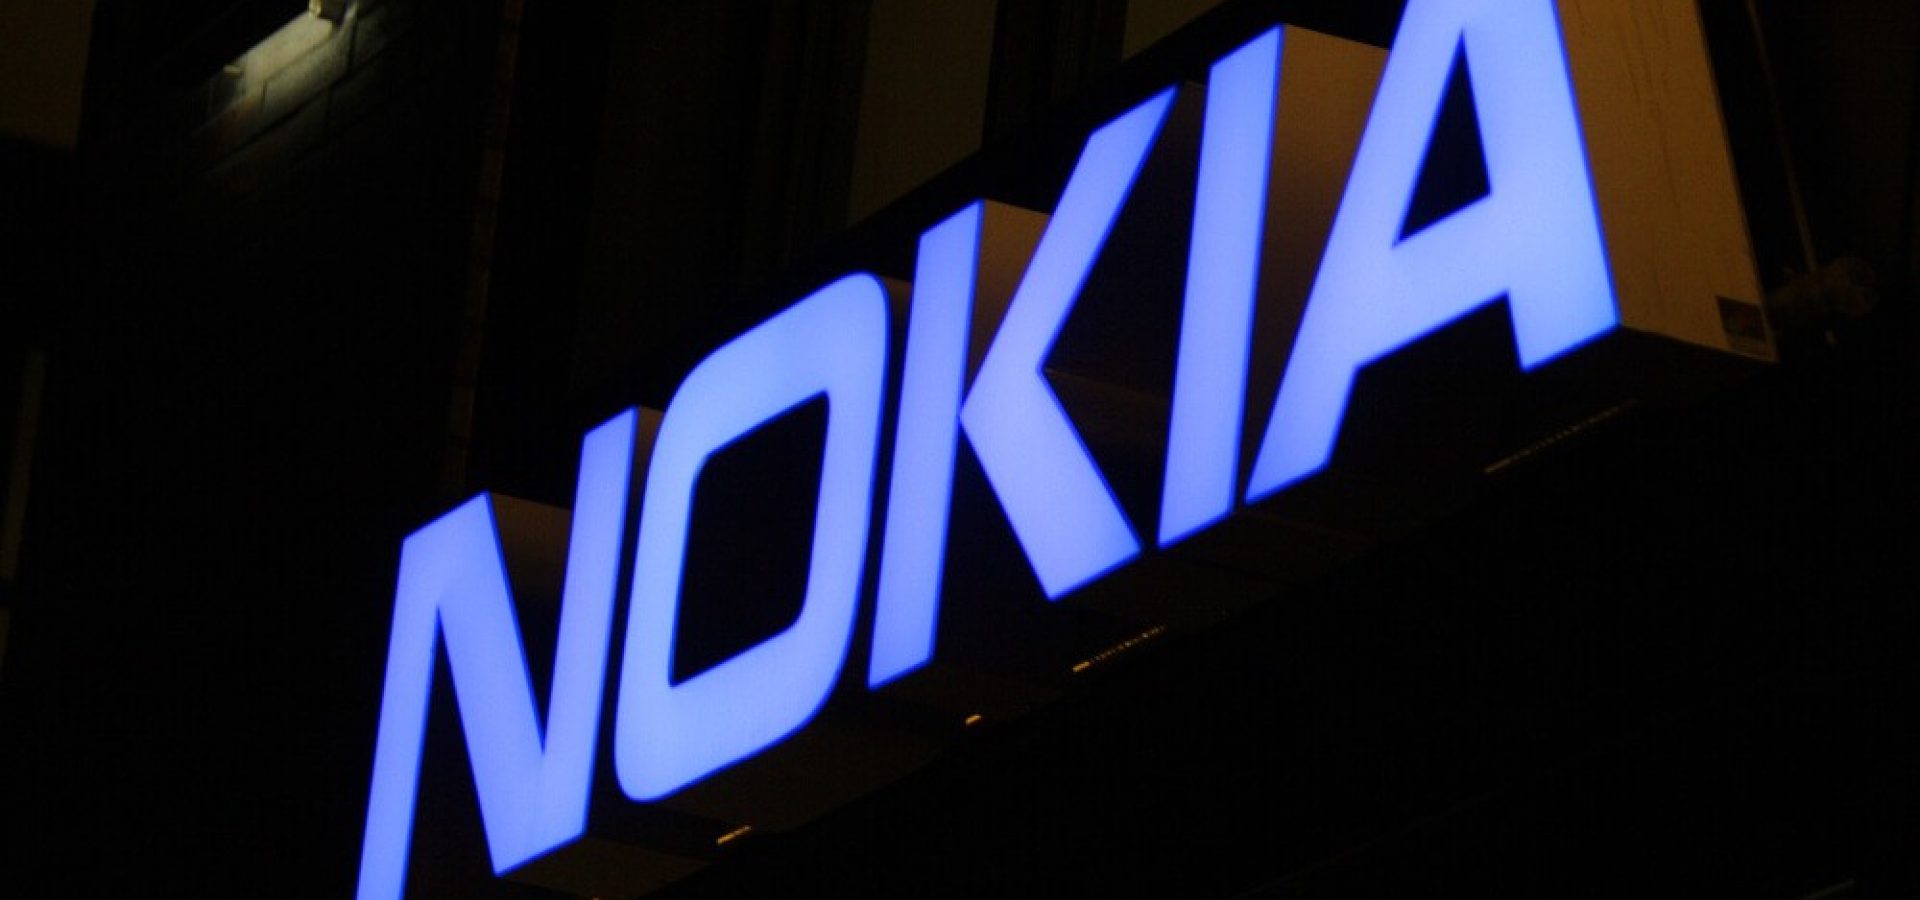 Nokia: The logo of the brand Nokia.